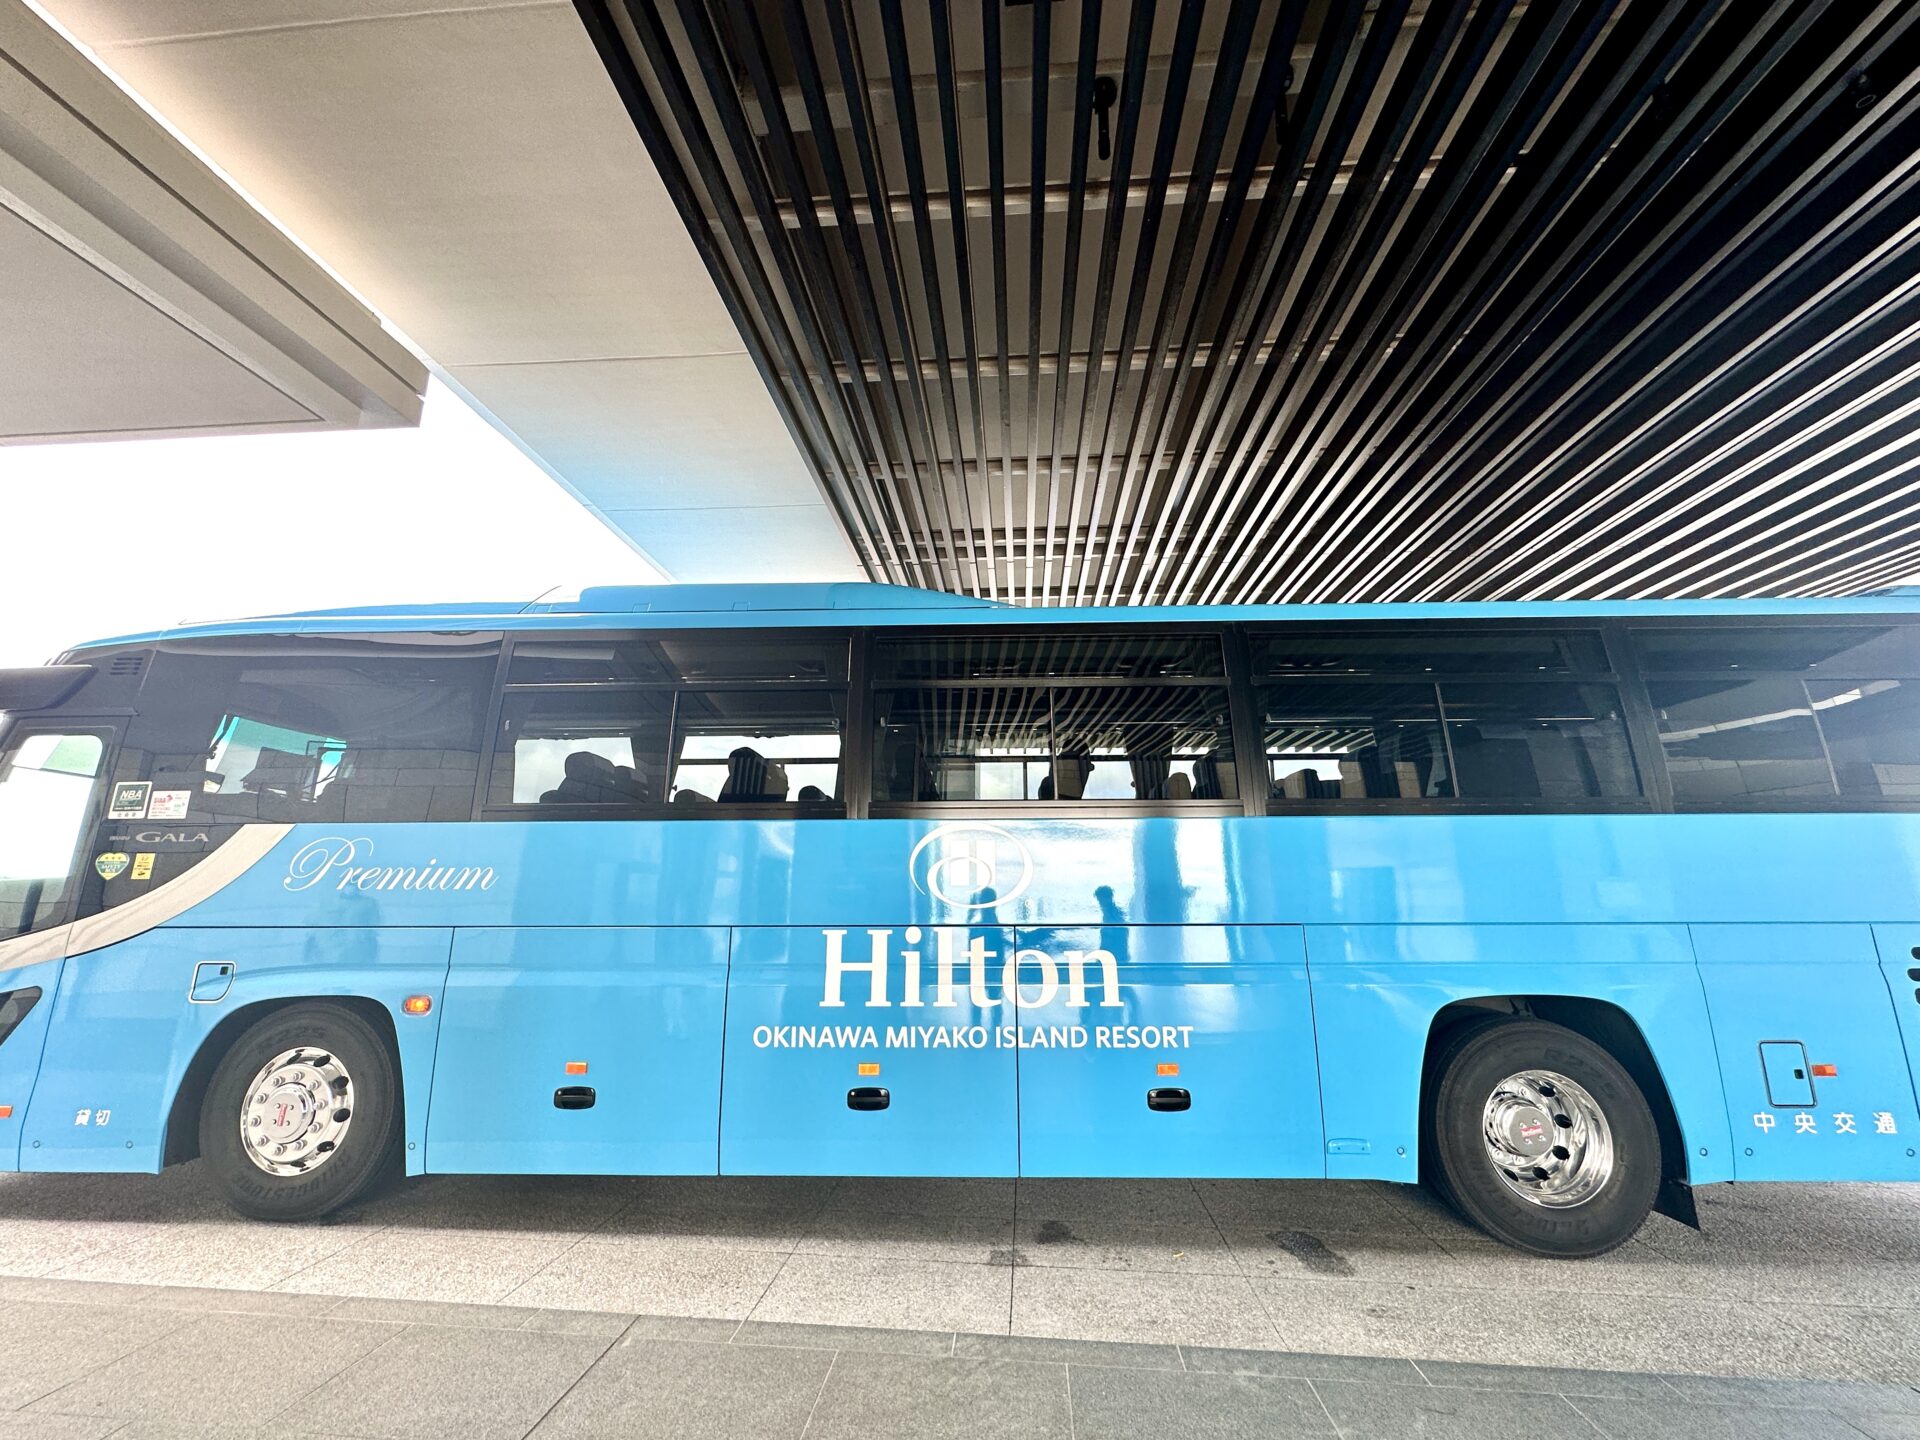 ヒルトン沖縄宮古島リゾート 宮古島空港からの送迎バス